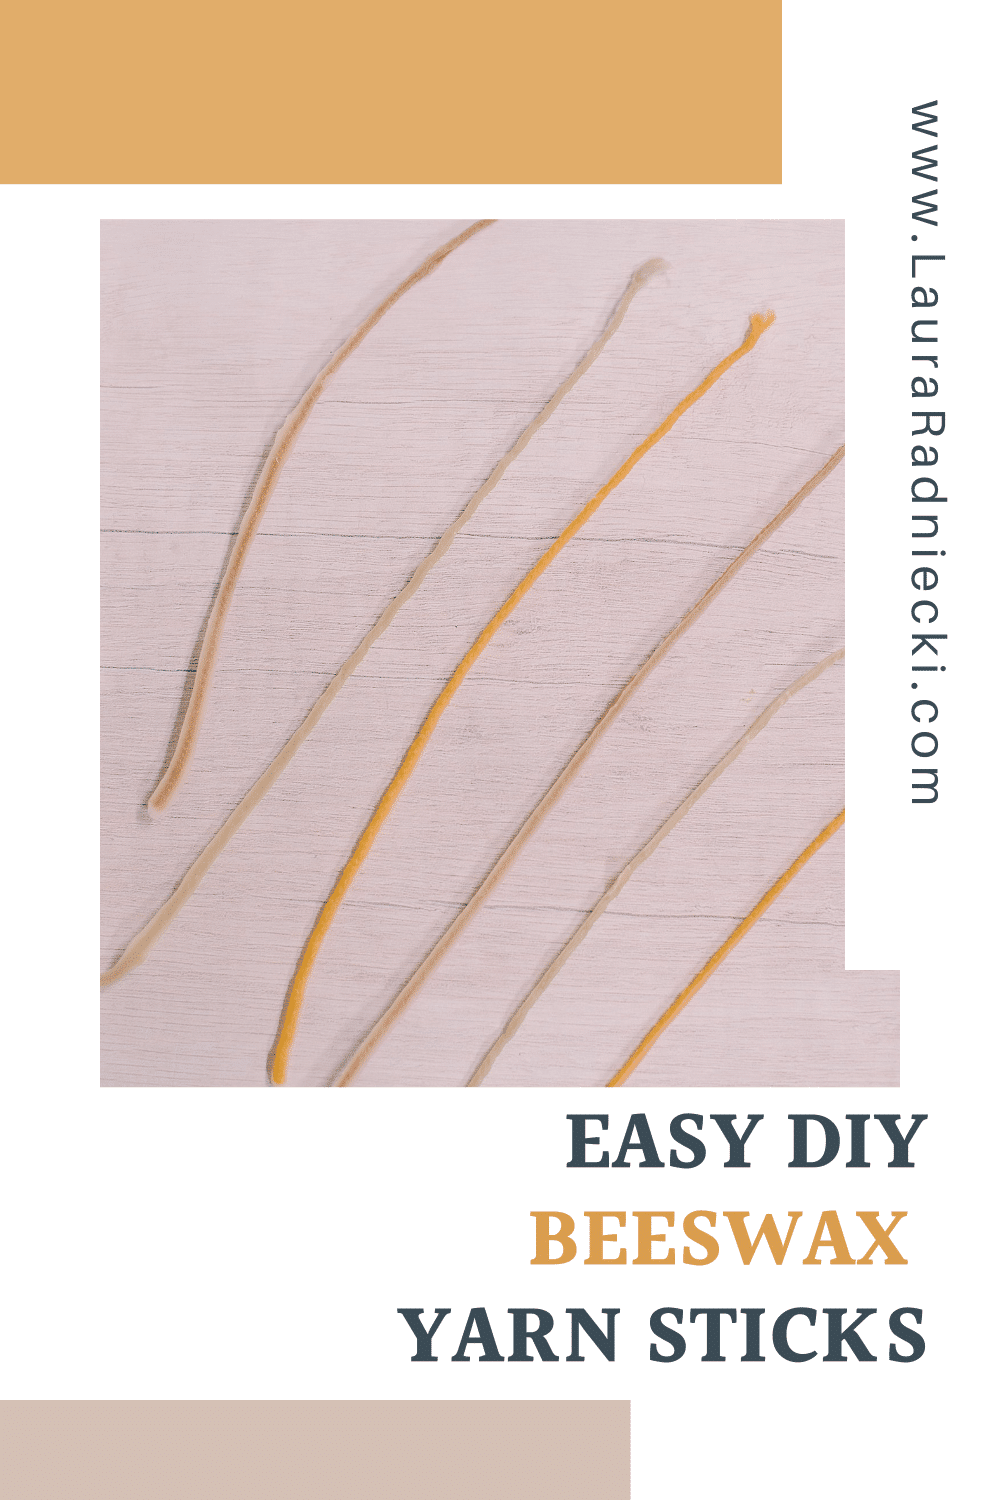 How to Make DIY Beeswax Yarn Sticks